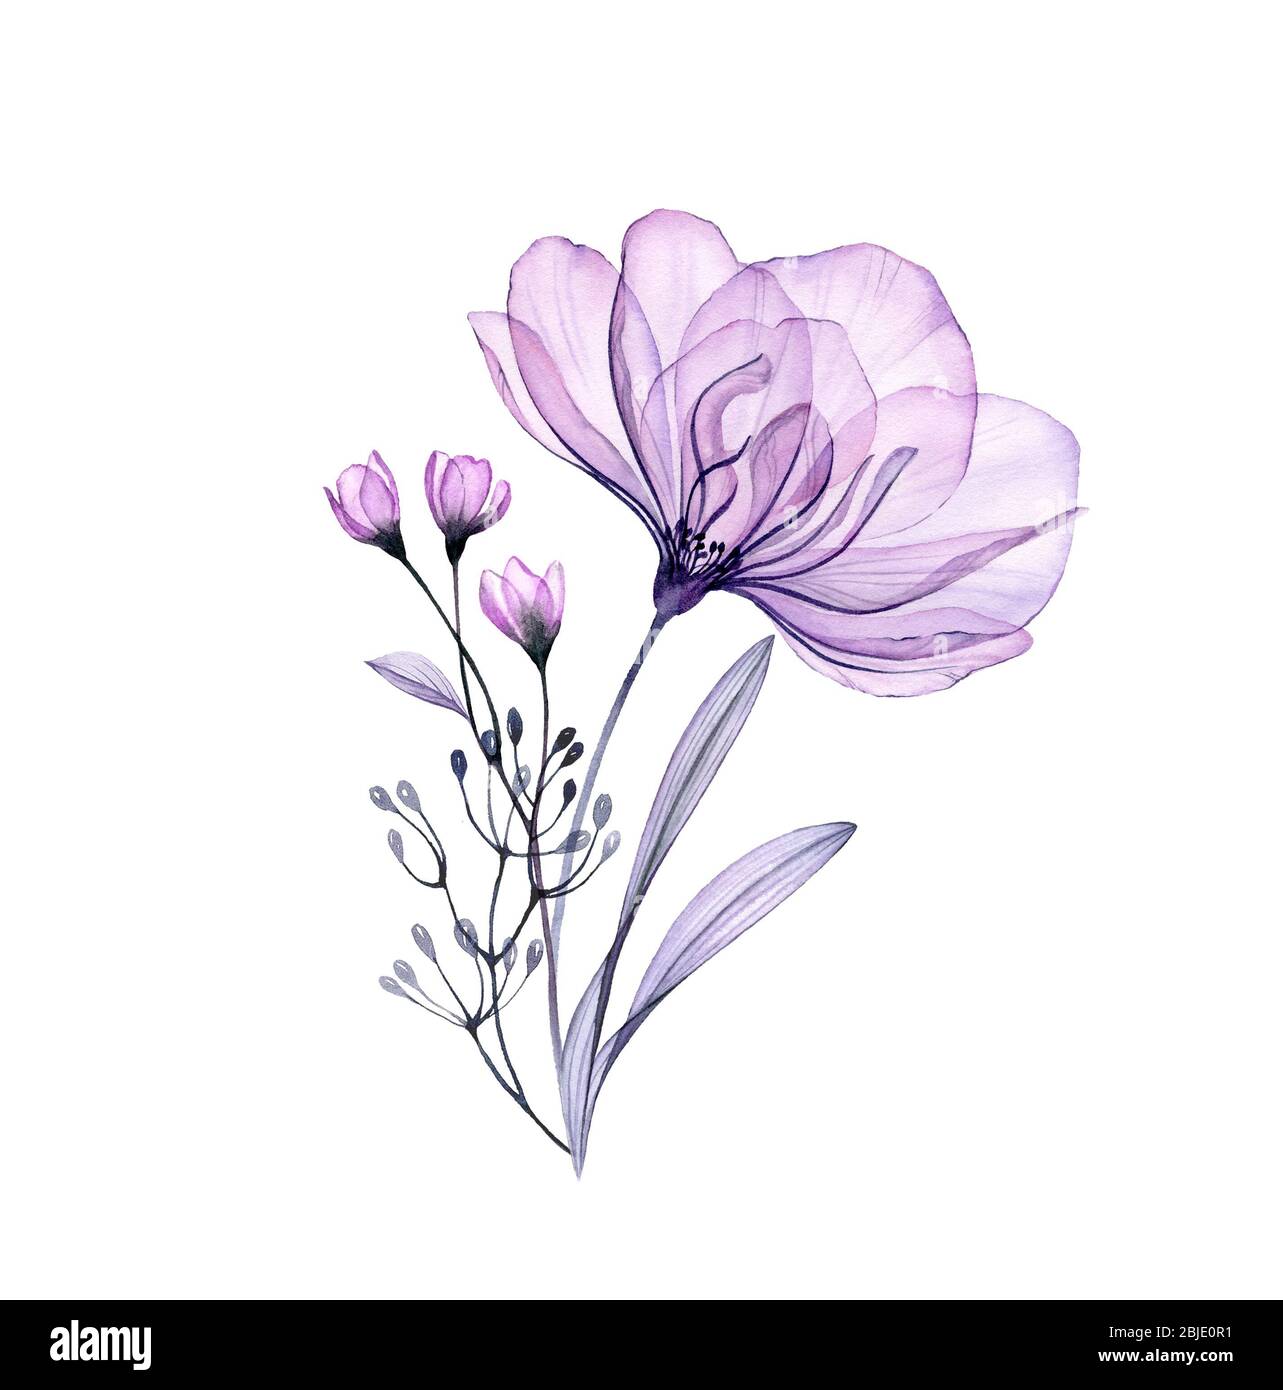 Aquarell Rosenstrauß. Handgemalte Kunstwerke mit transparenten violetten Blüten isoliert auf weiß. Botanische Illustration für Karten, Hochzeit Design Stockfoto